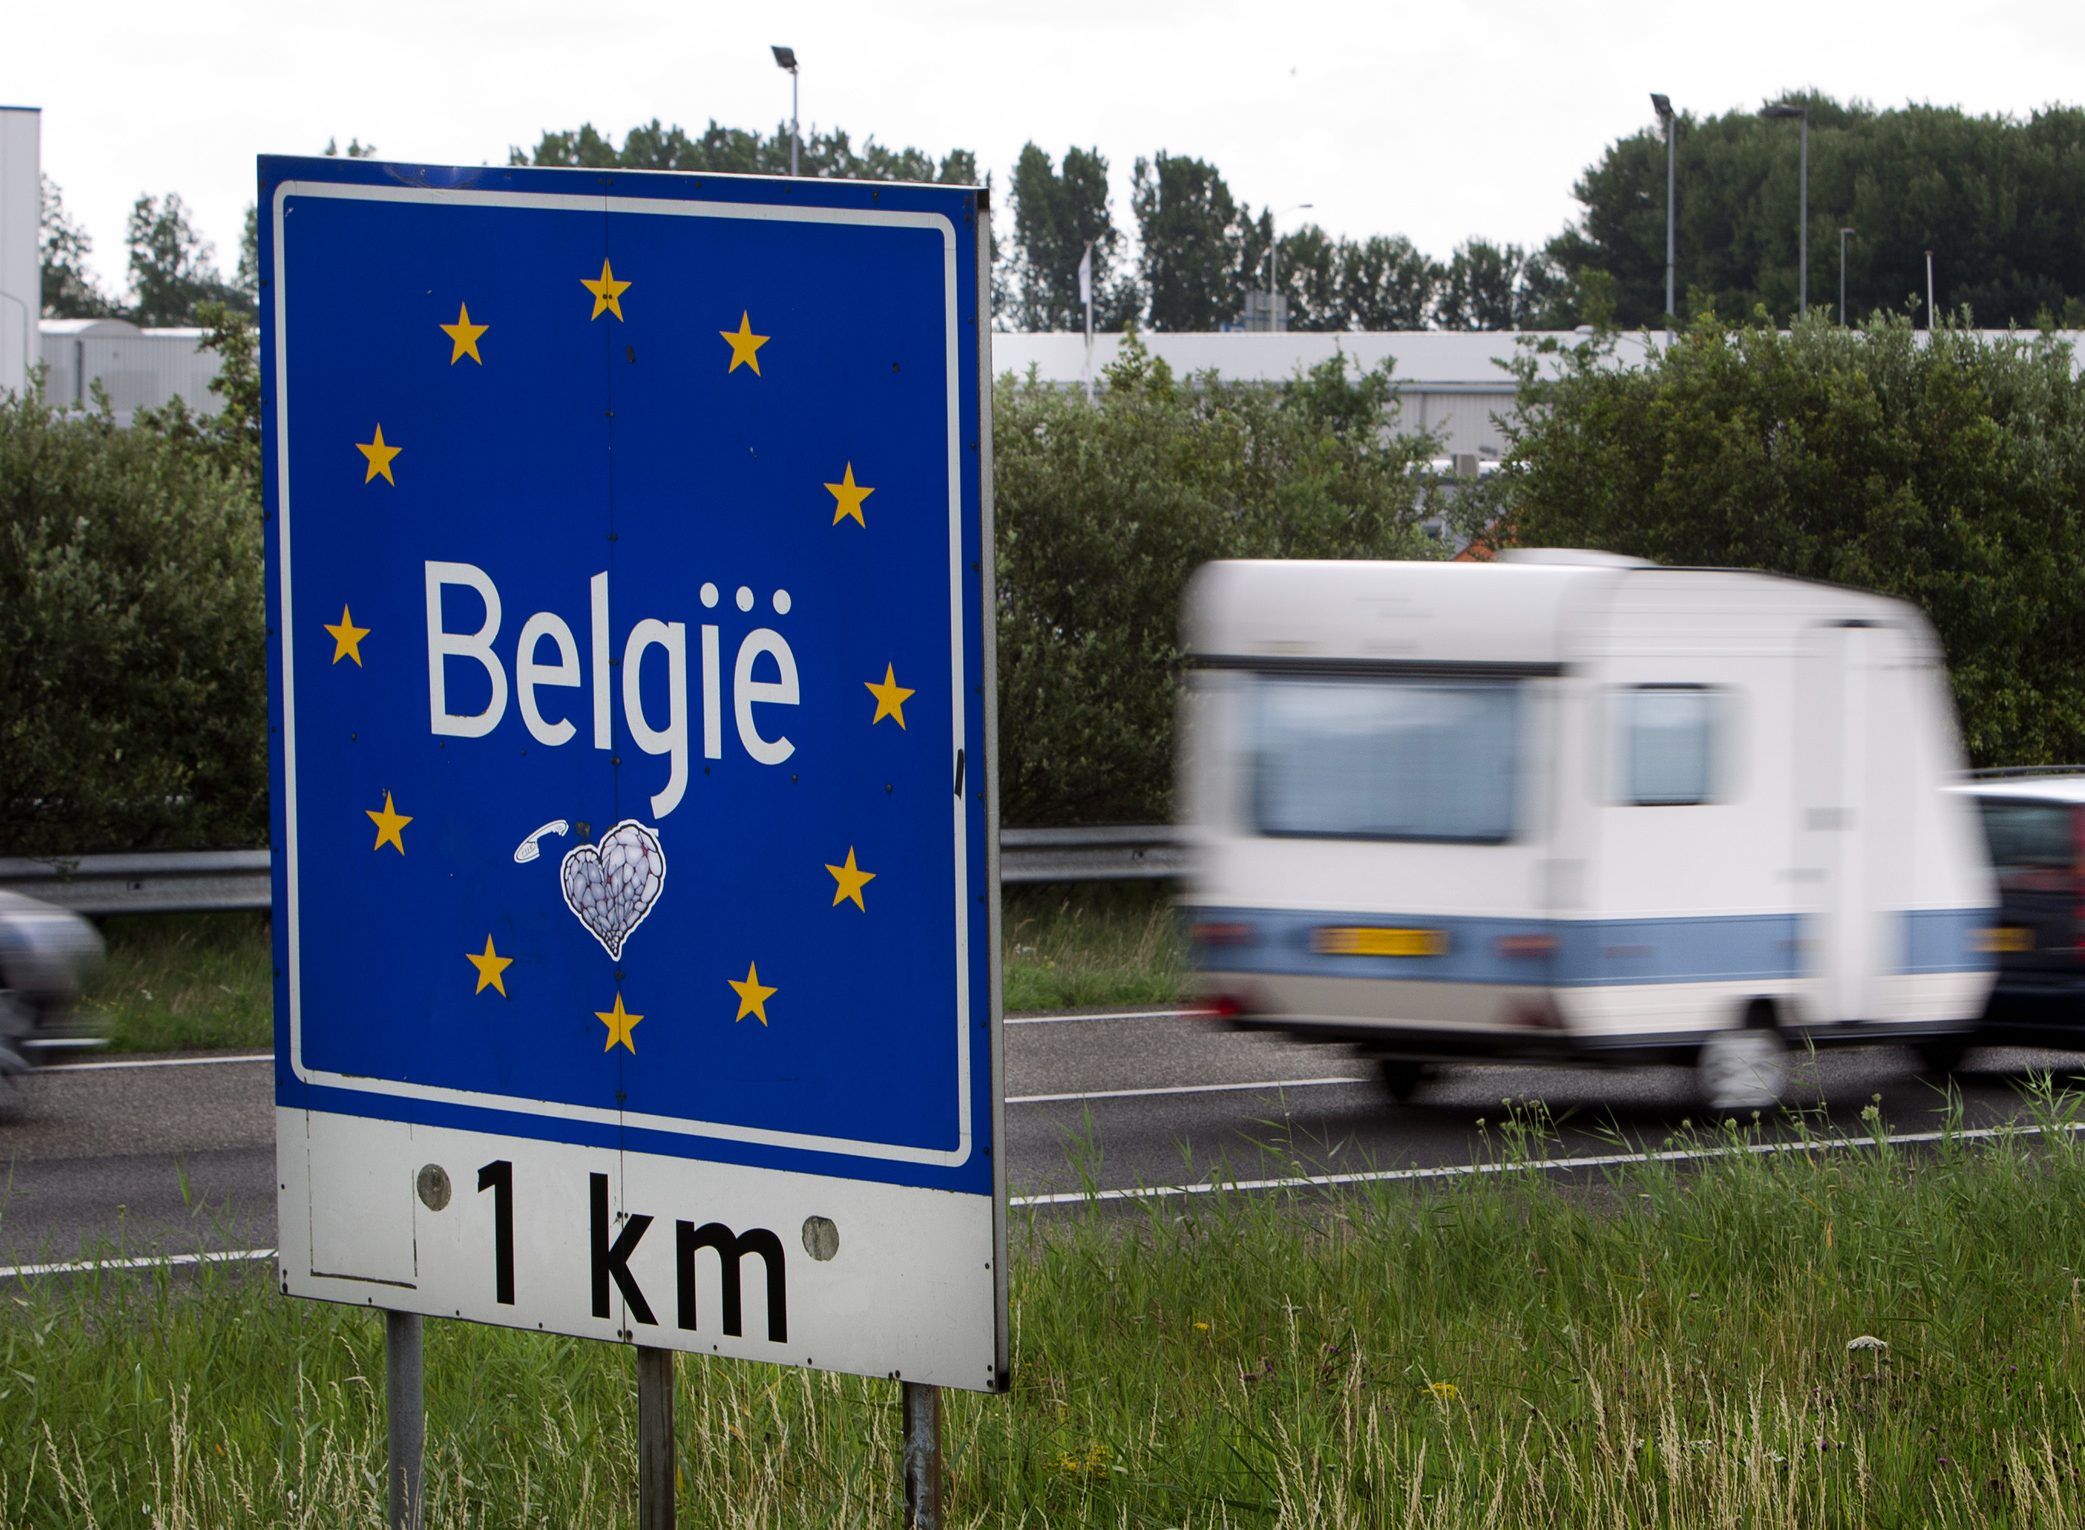 Nederland en België hebben maandag een grensverdrag gesloten waardoor een deel van wat voorheen België was nu onder Nederland valt en omgekeerd. De ondertekening is onderdeel van het staatsbezoek van koning Filip en koningin Mathilde aan ons land.